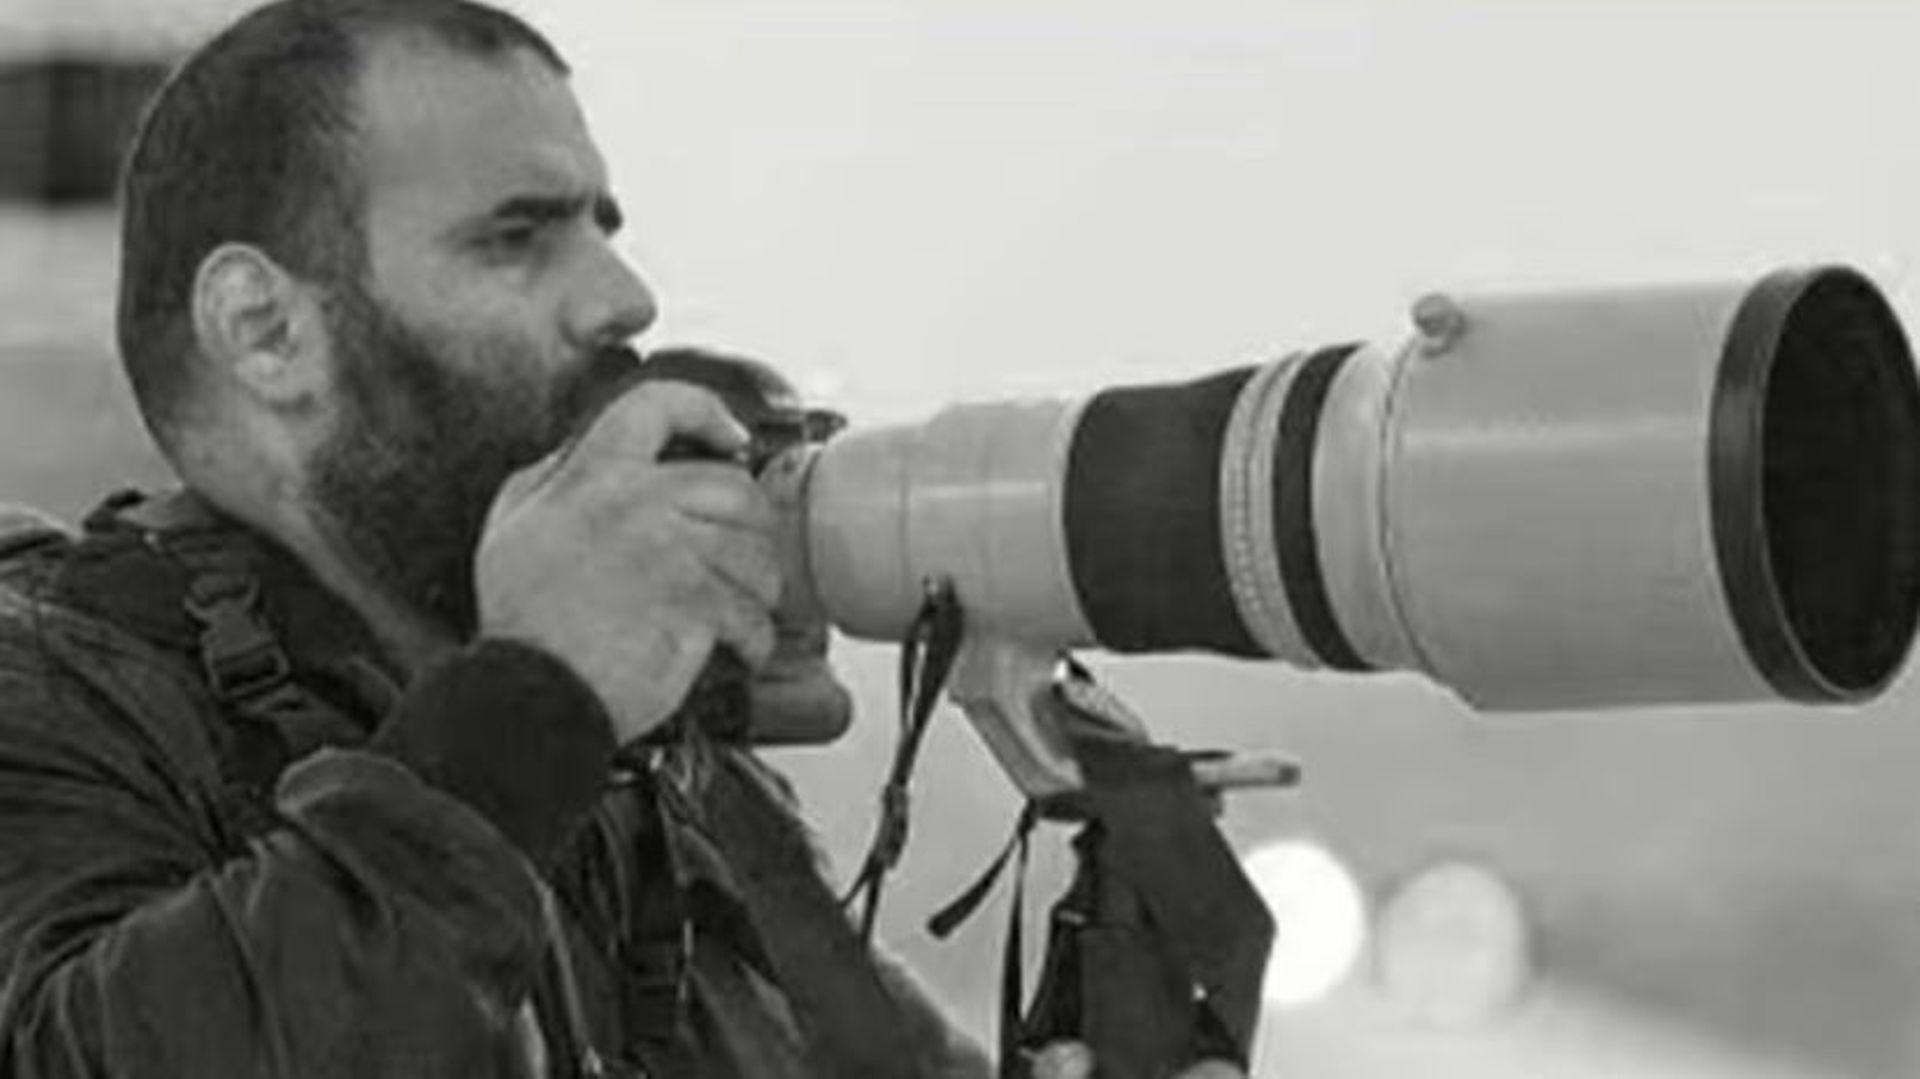 Le photojournaliste qatari Khalid al-Misslam est décédé samedi alors qu’il couvrait la Coupe du monde au Qatar